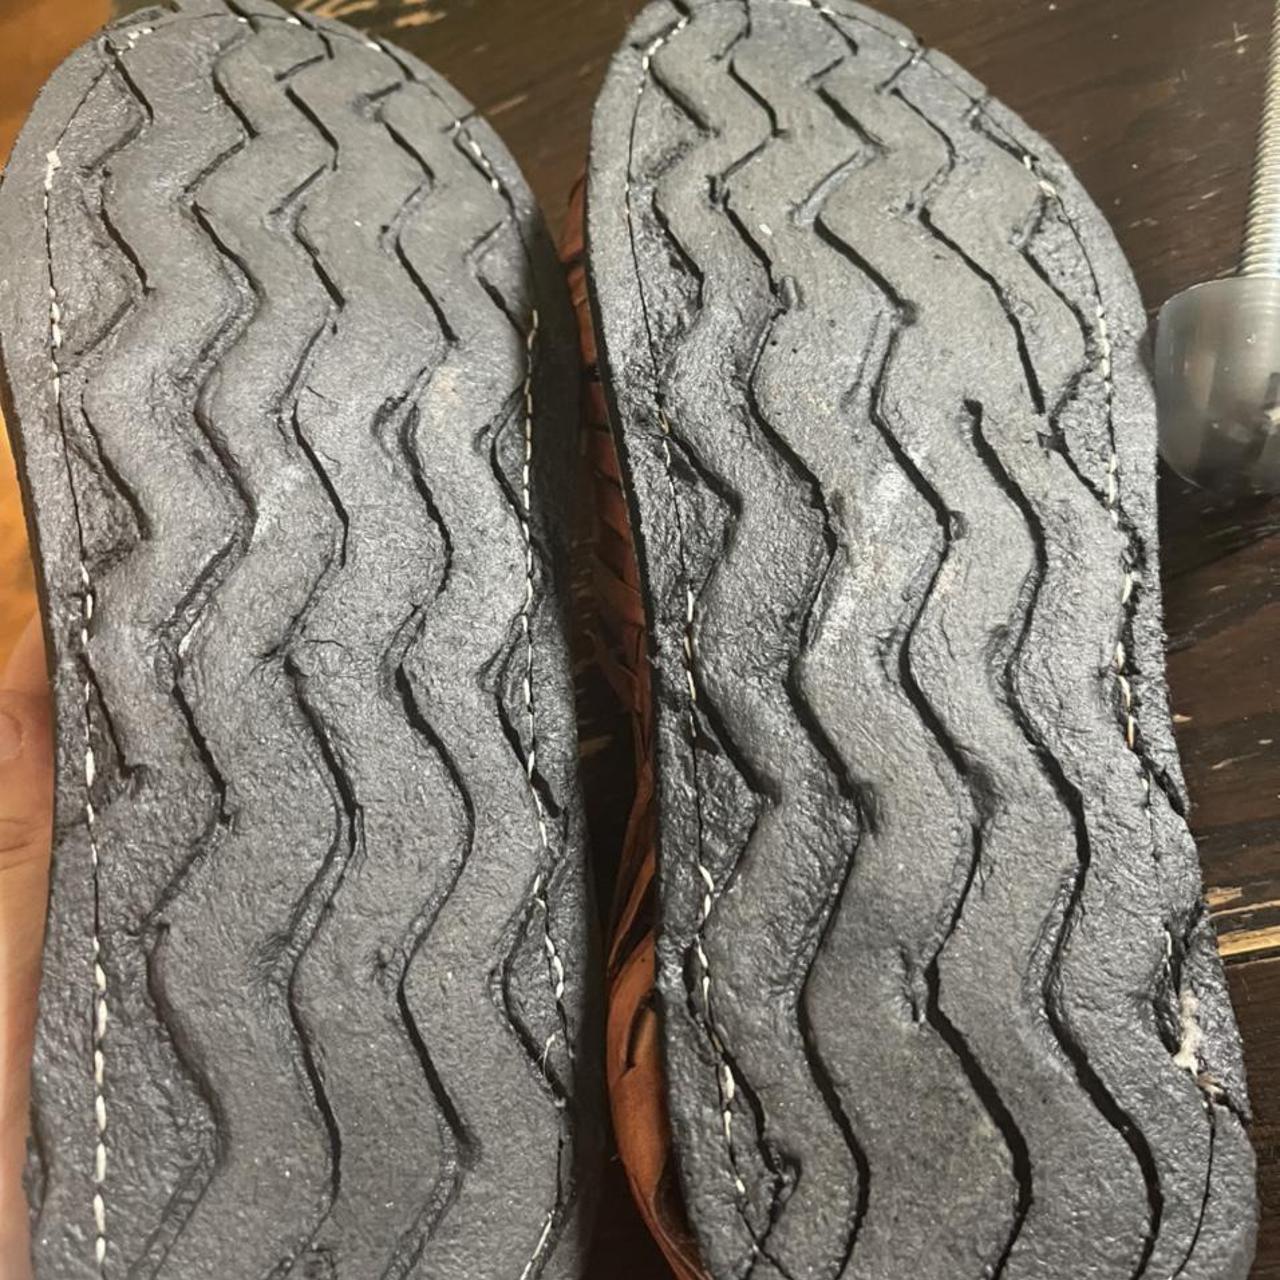 Product Image 4 - Galvez leather sun shoes sandals.